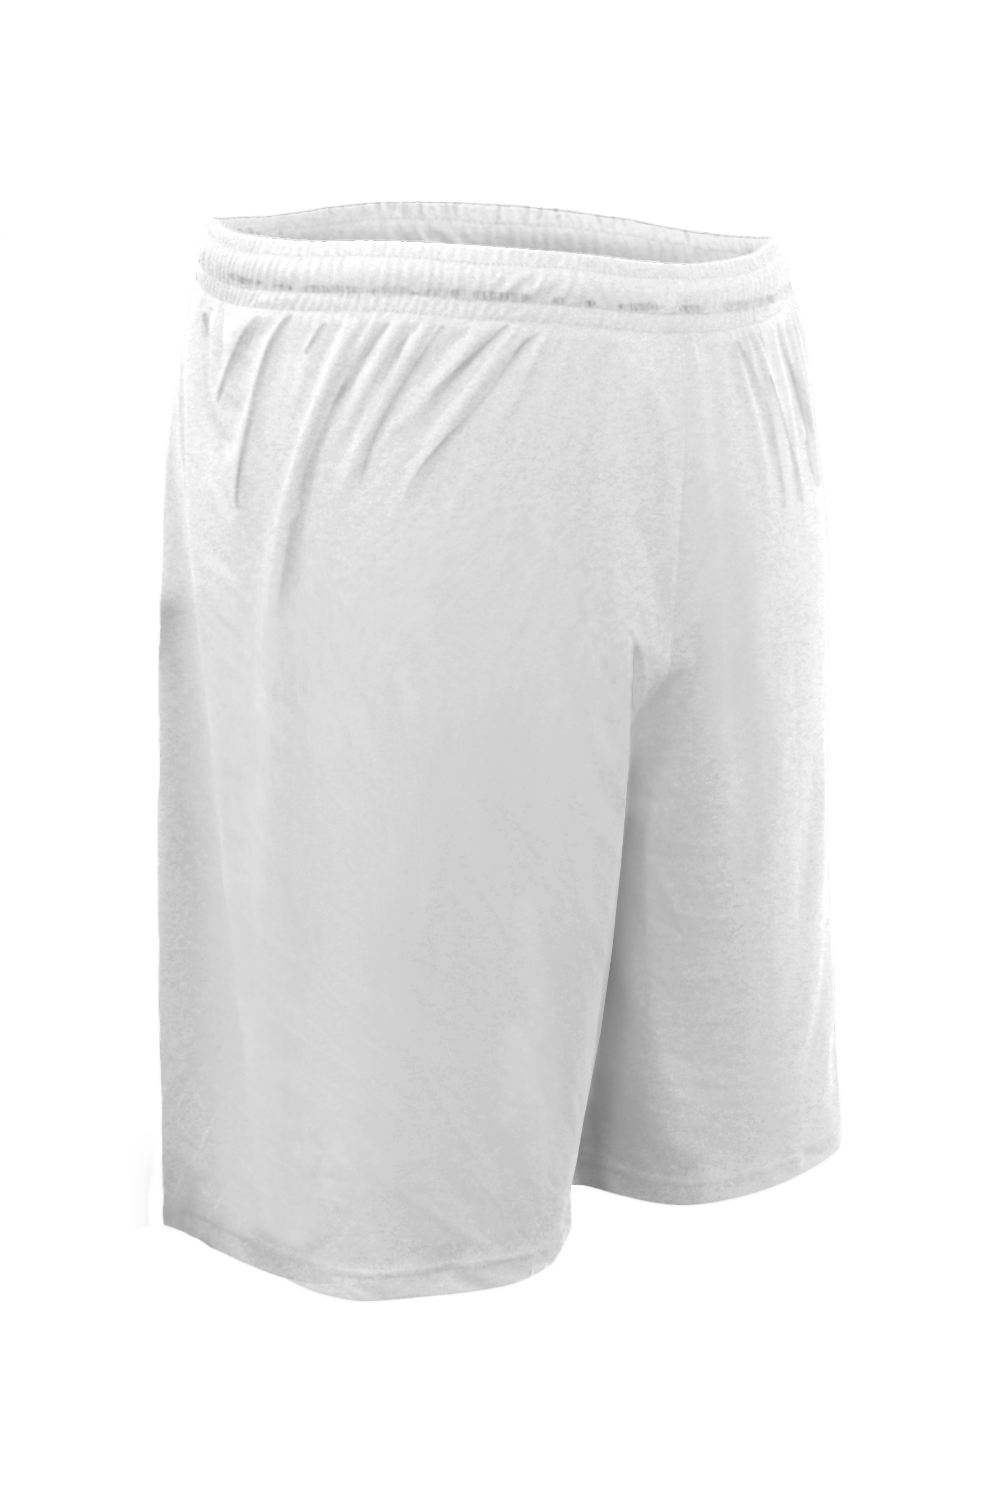 Standard Shorts (White)